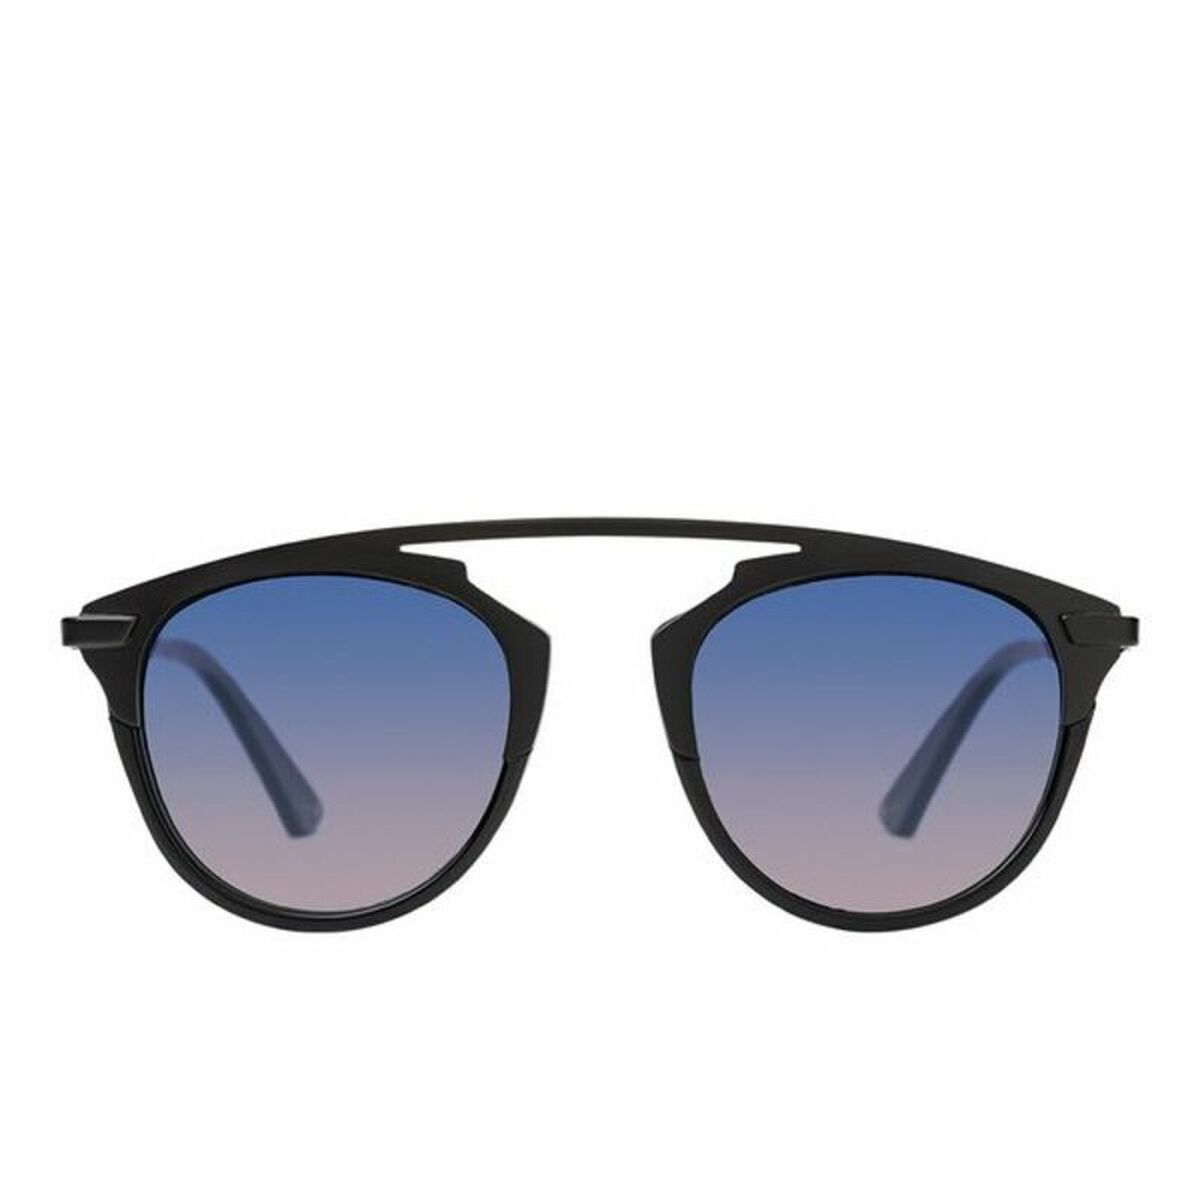 Okulary przeciwsłoneczne Damskie Paltons Sunglasses 410